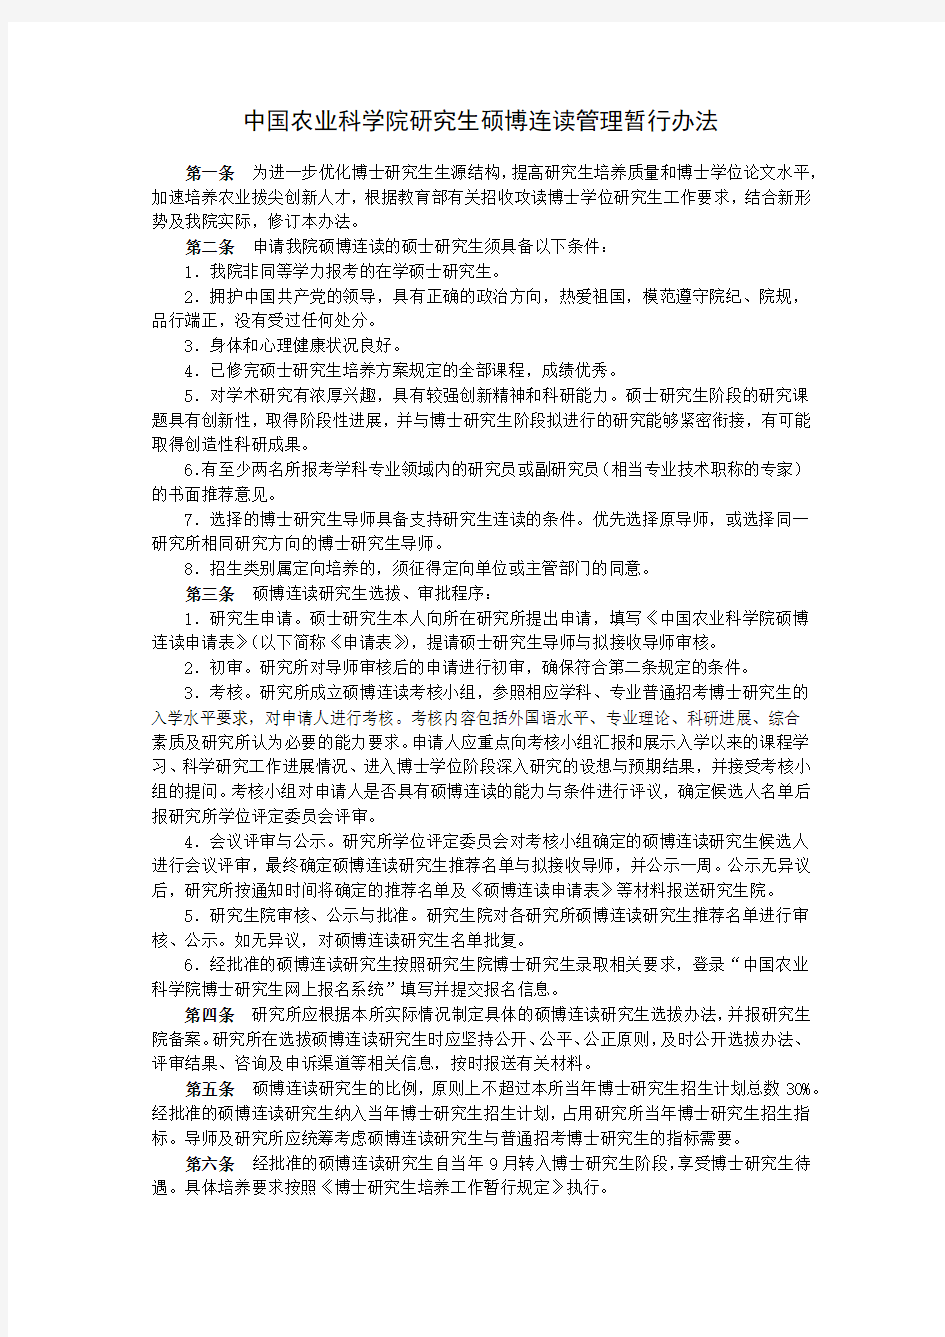 中国农业科学院研究生硕博连读管理暂行办法(2017年)